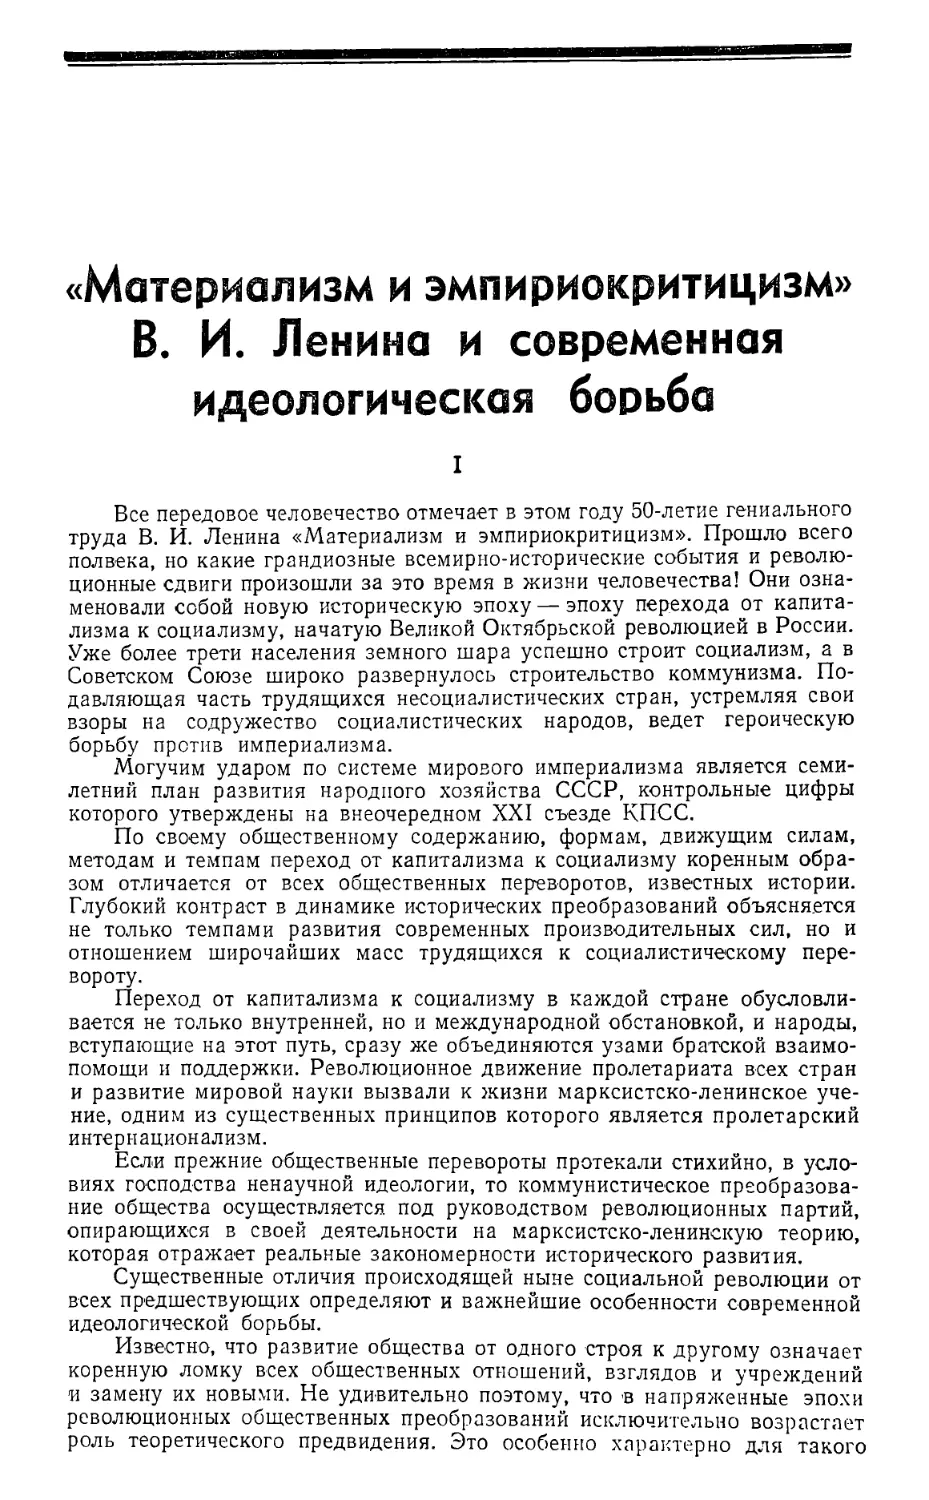 Передовая — «Материализм и эмпириокритицизм» В. И. Ленина и современная идеологическая борьба